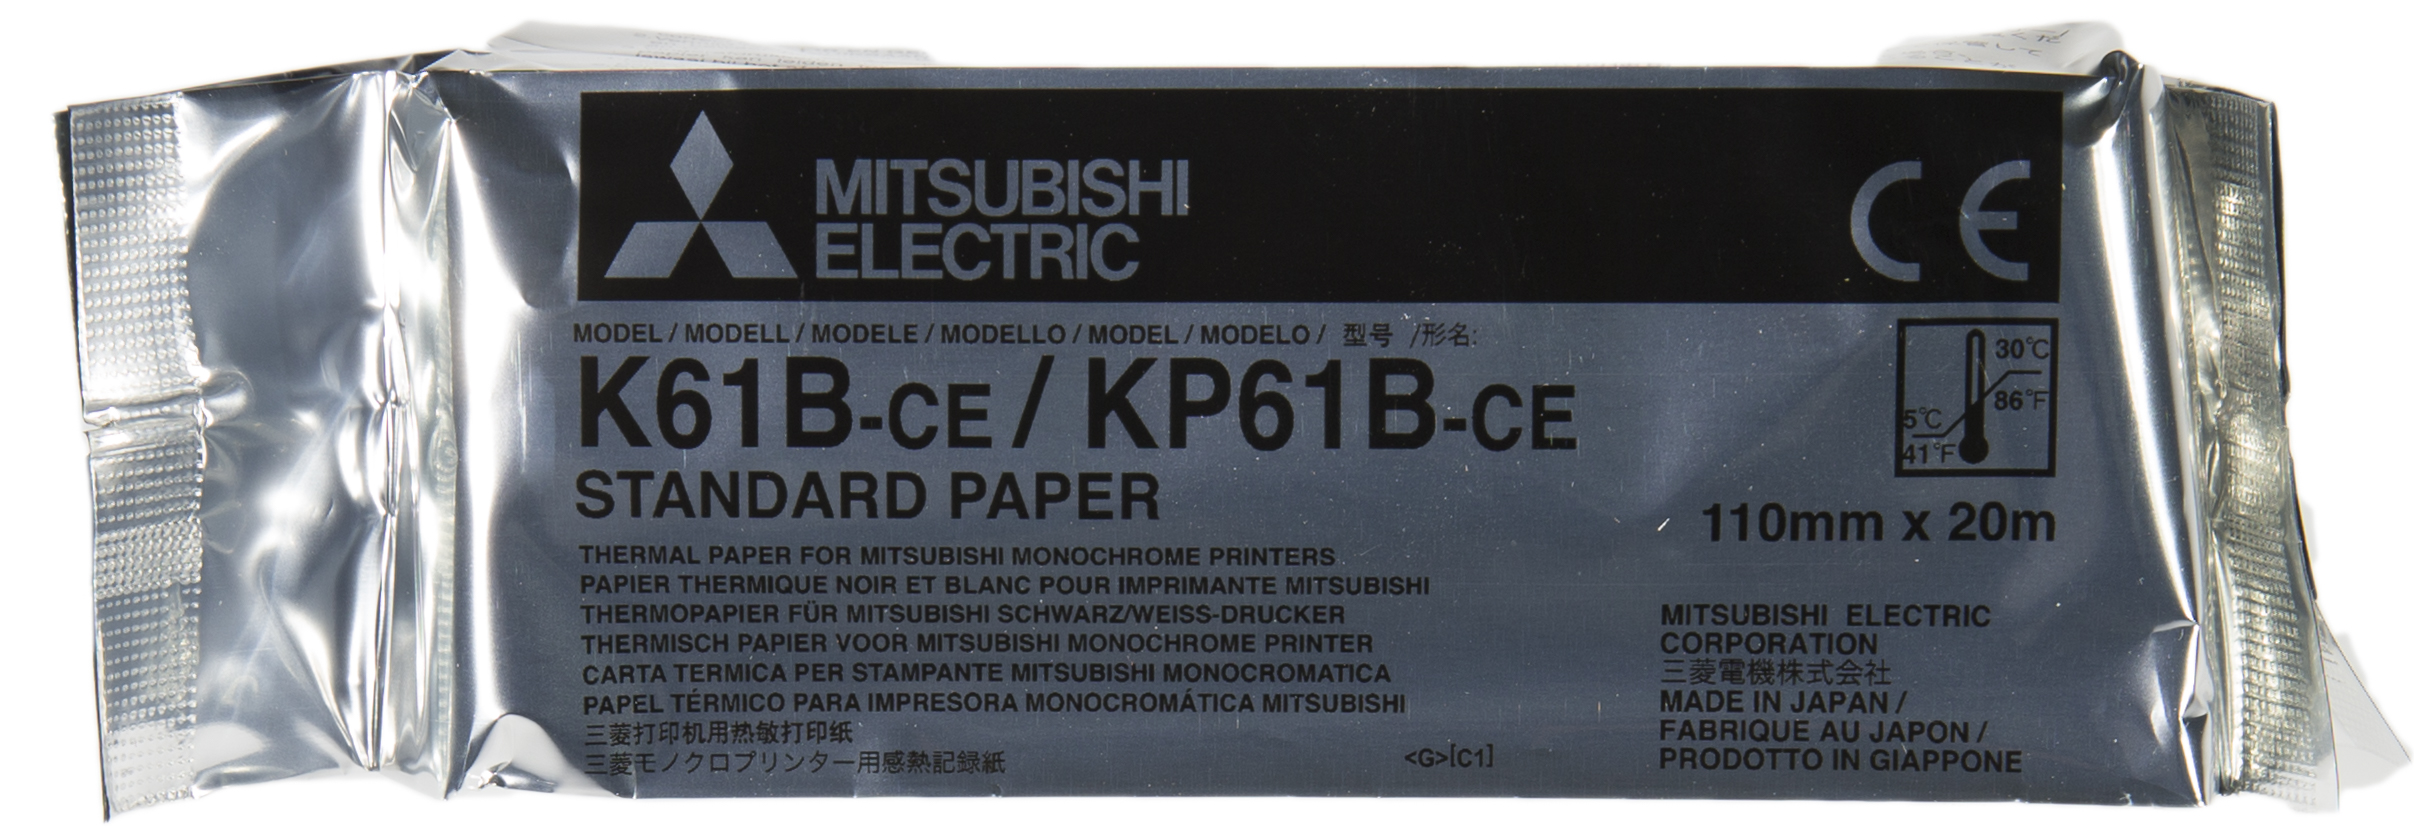 Videoprinterpapier/Mitsubishi K 61 B GRU836004